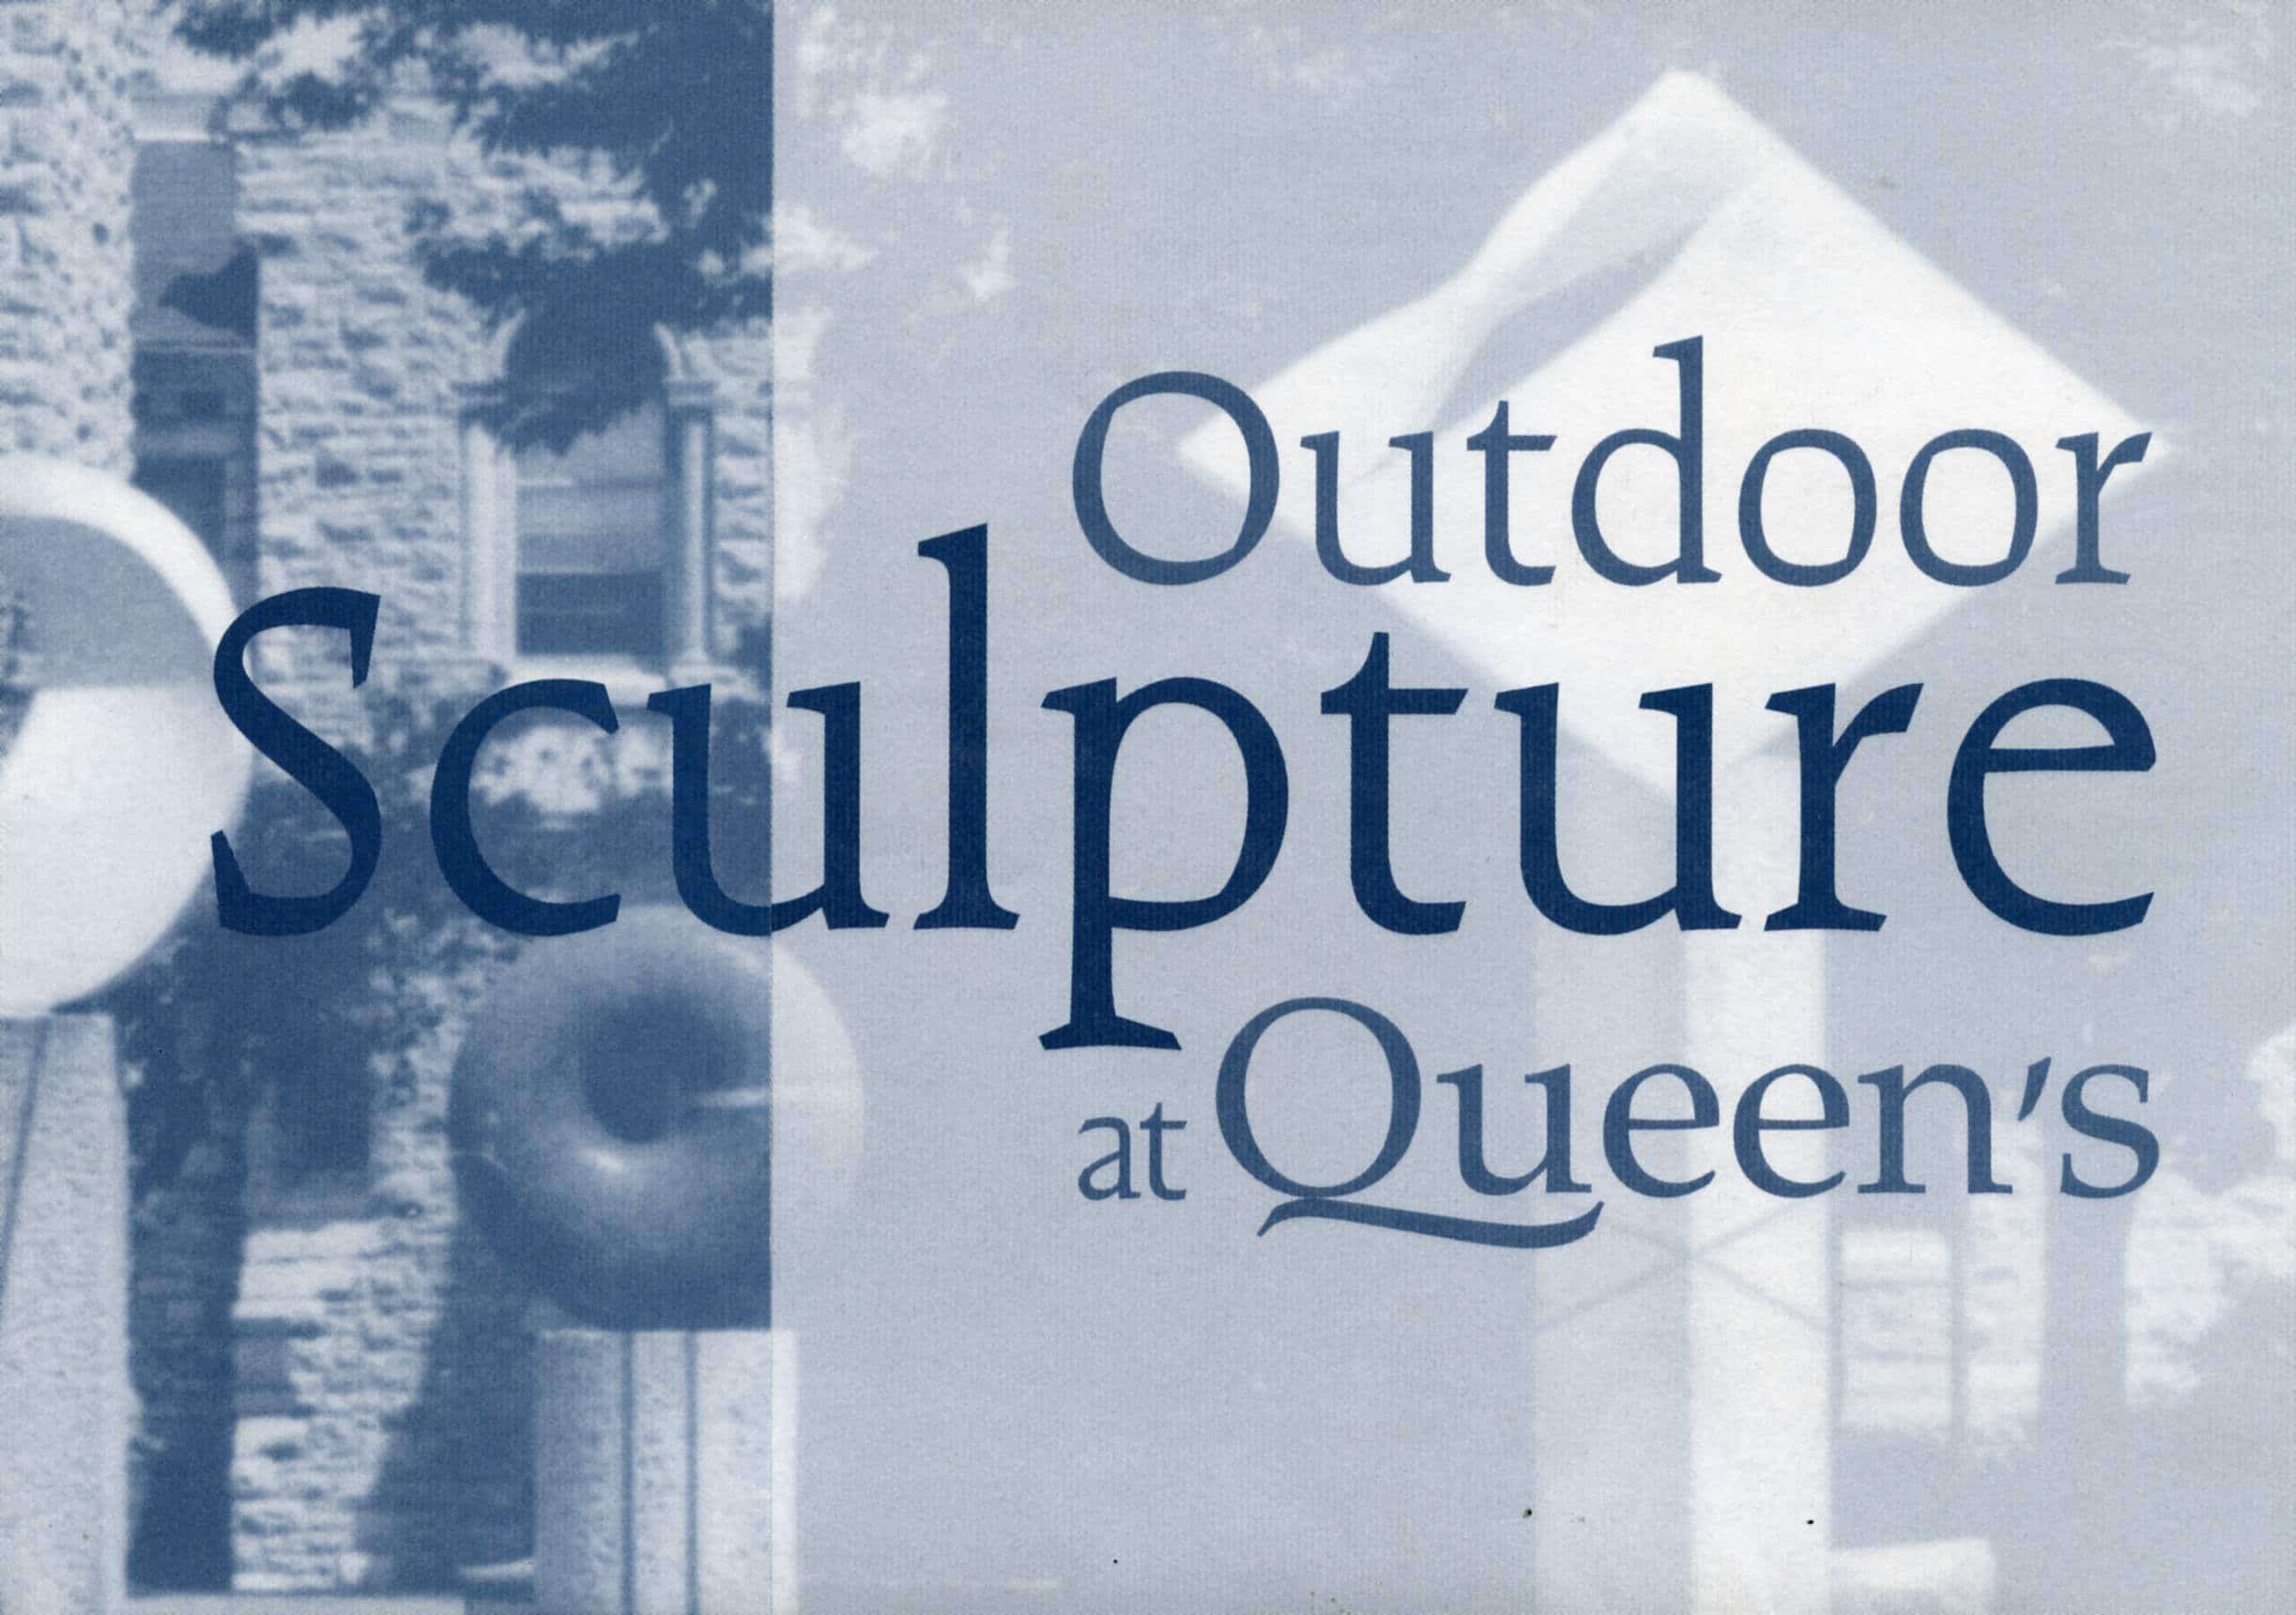 Brochure, Outdoor Sculpture at Queen’s, 2002